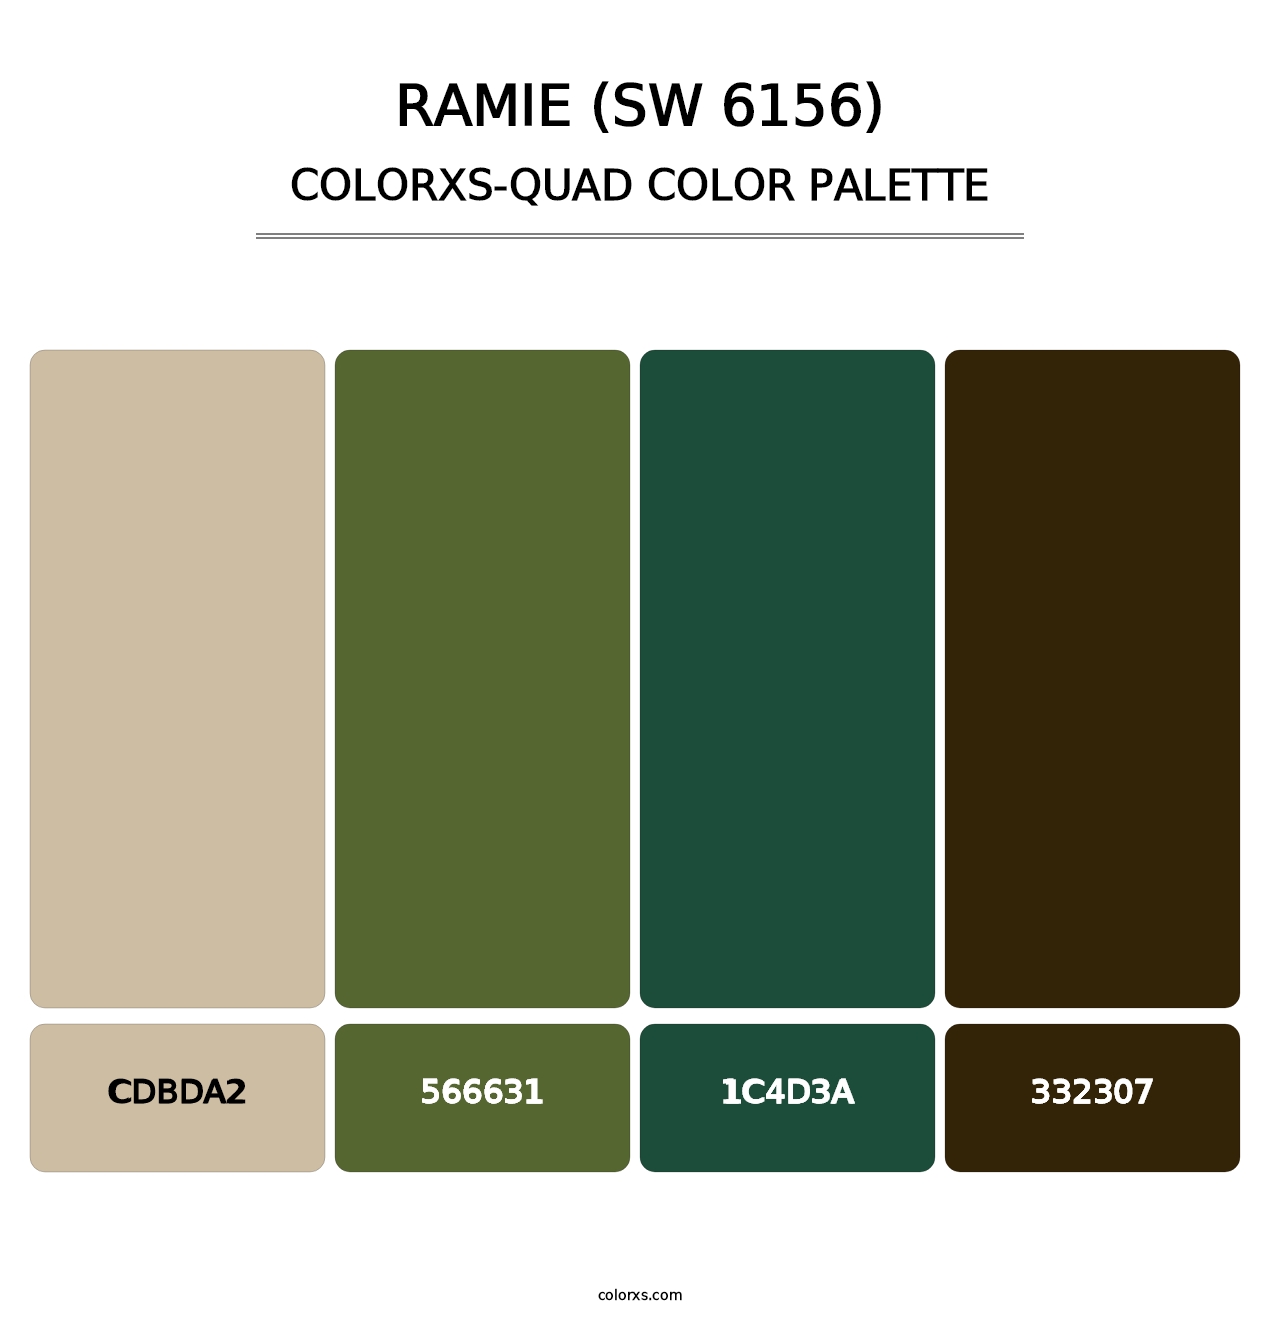 Ramie (SW 6156) - Colorxs Quad Palette